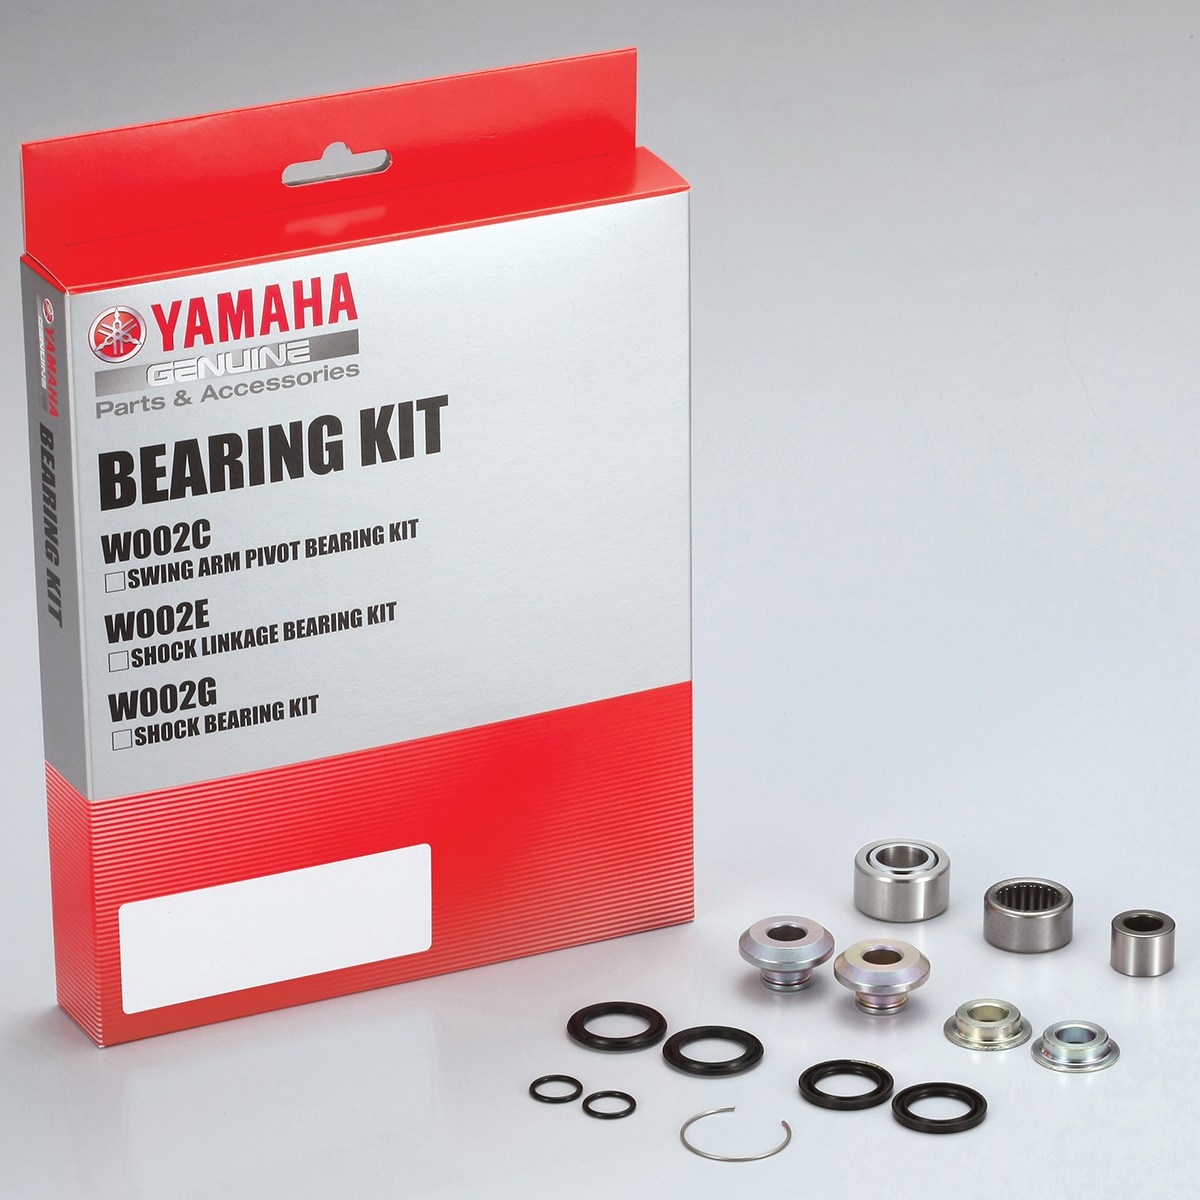 MSR Swing Arm & Linkage Bearing Seal Kit for Yamaha YZ250 2002-2004